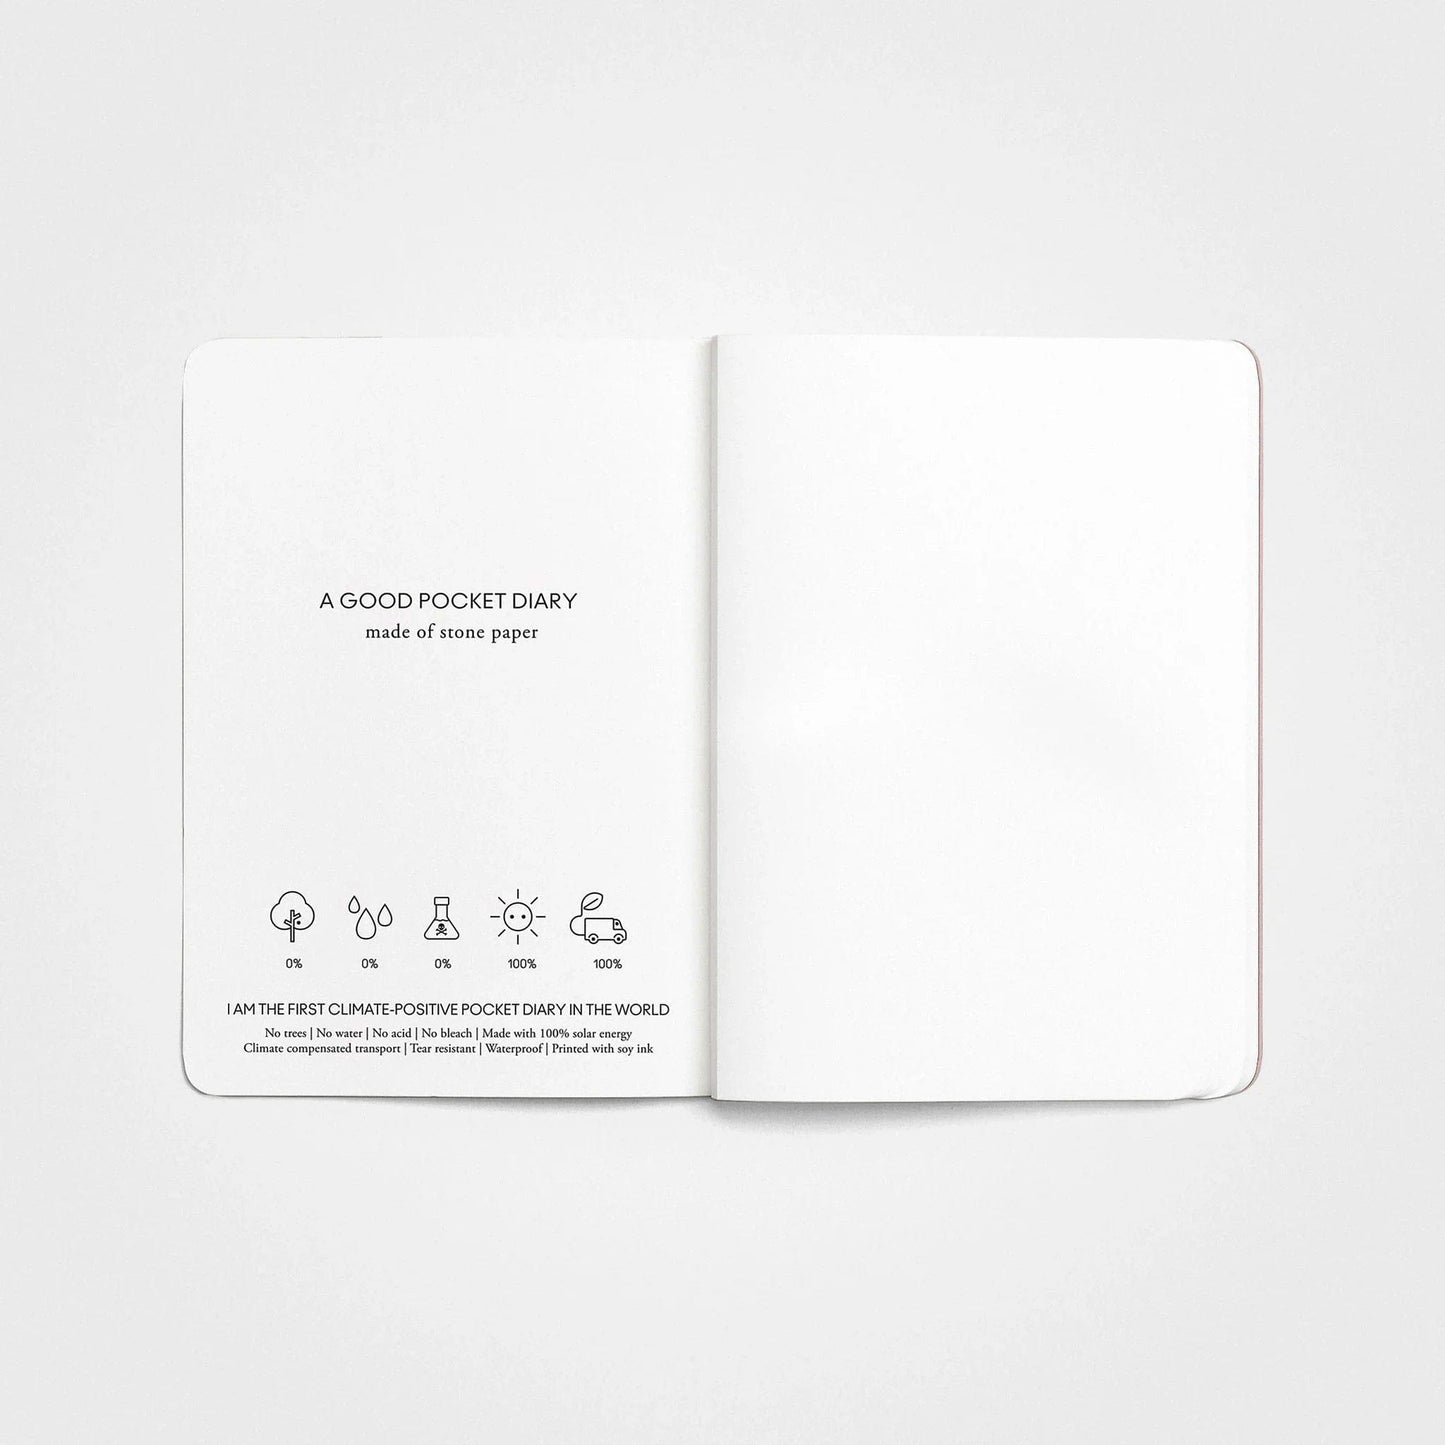 Taschen-Notizbuch A6 – Steinpapier, Dusty Pink